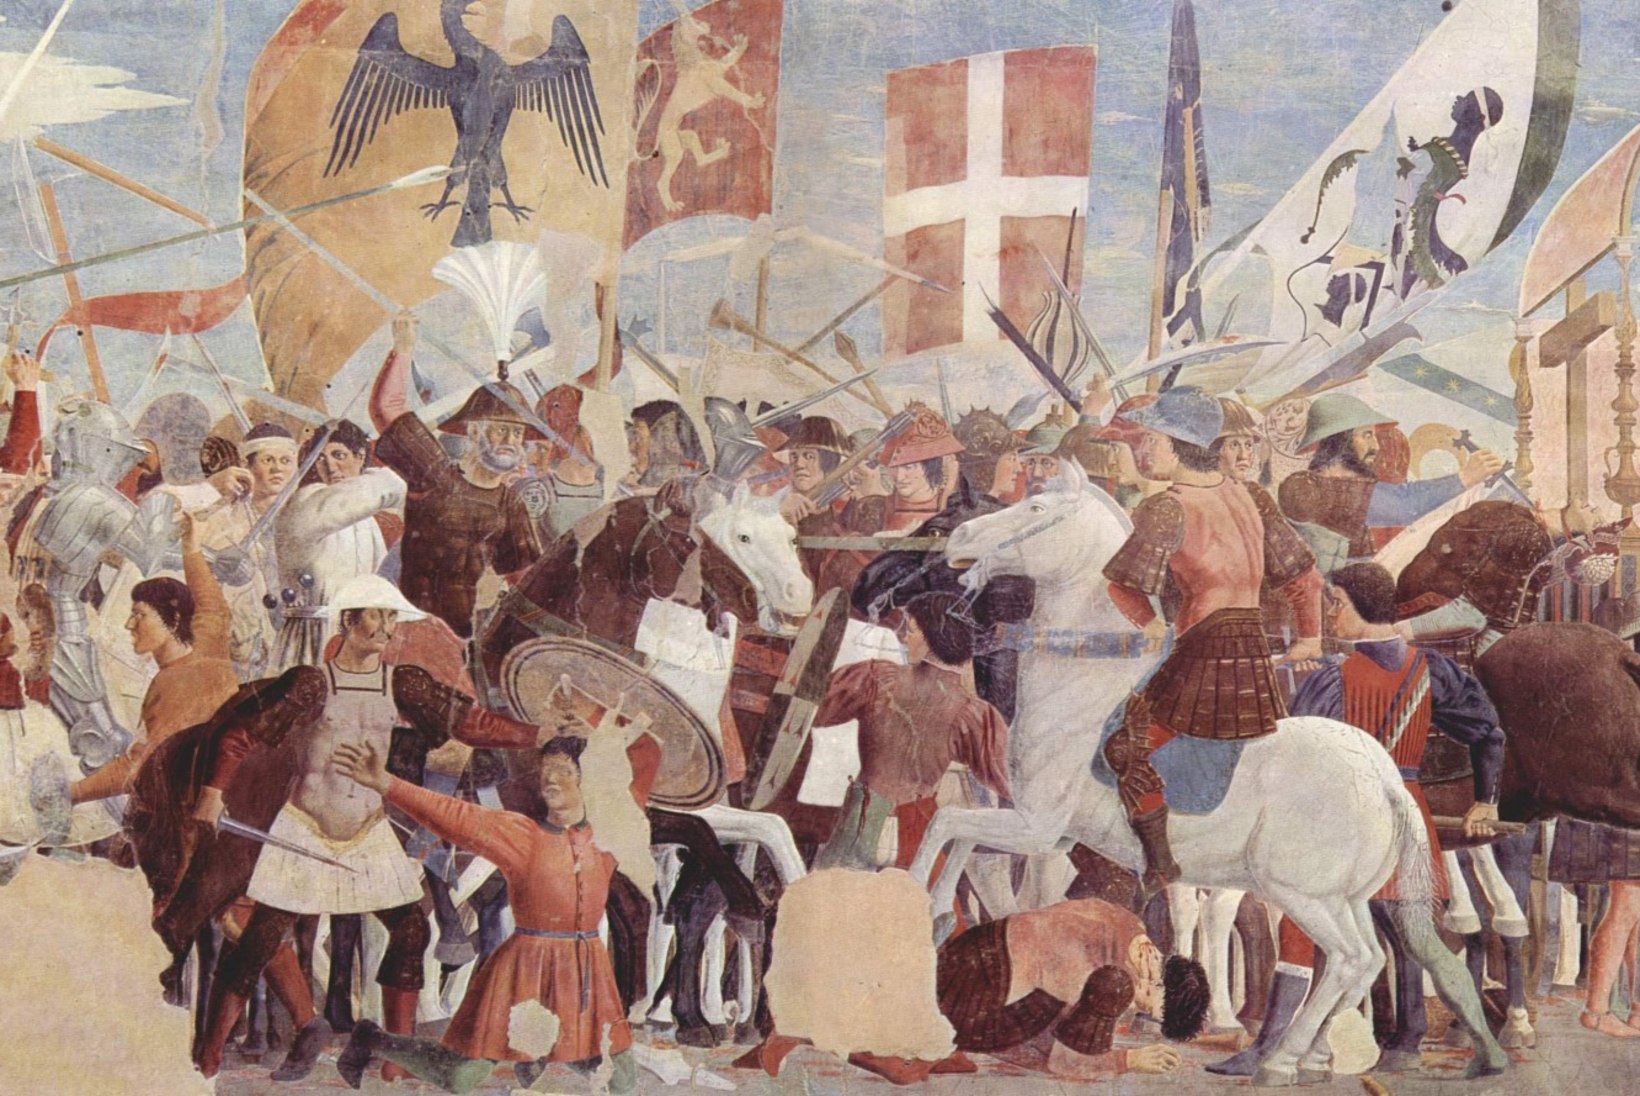 MINEVIKUHETK | 12. detsember: Bütsantsi väed lõid Niineve lahingus pärslasi